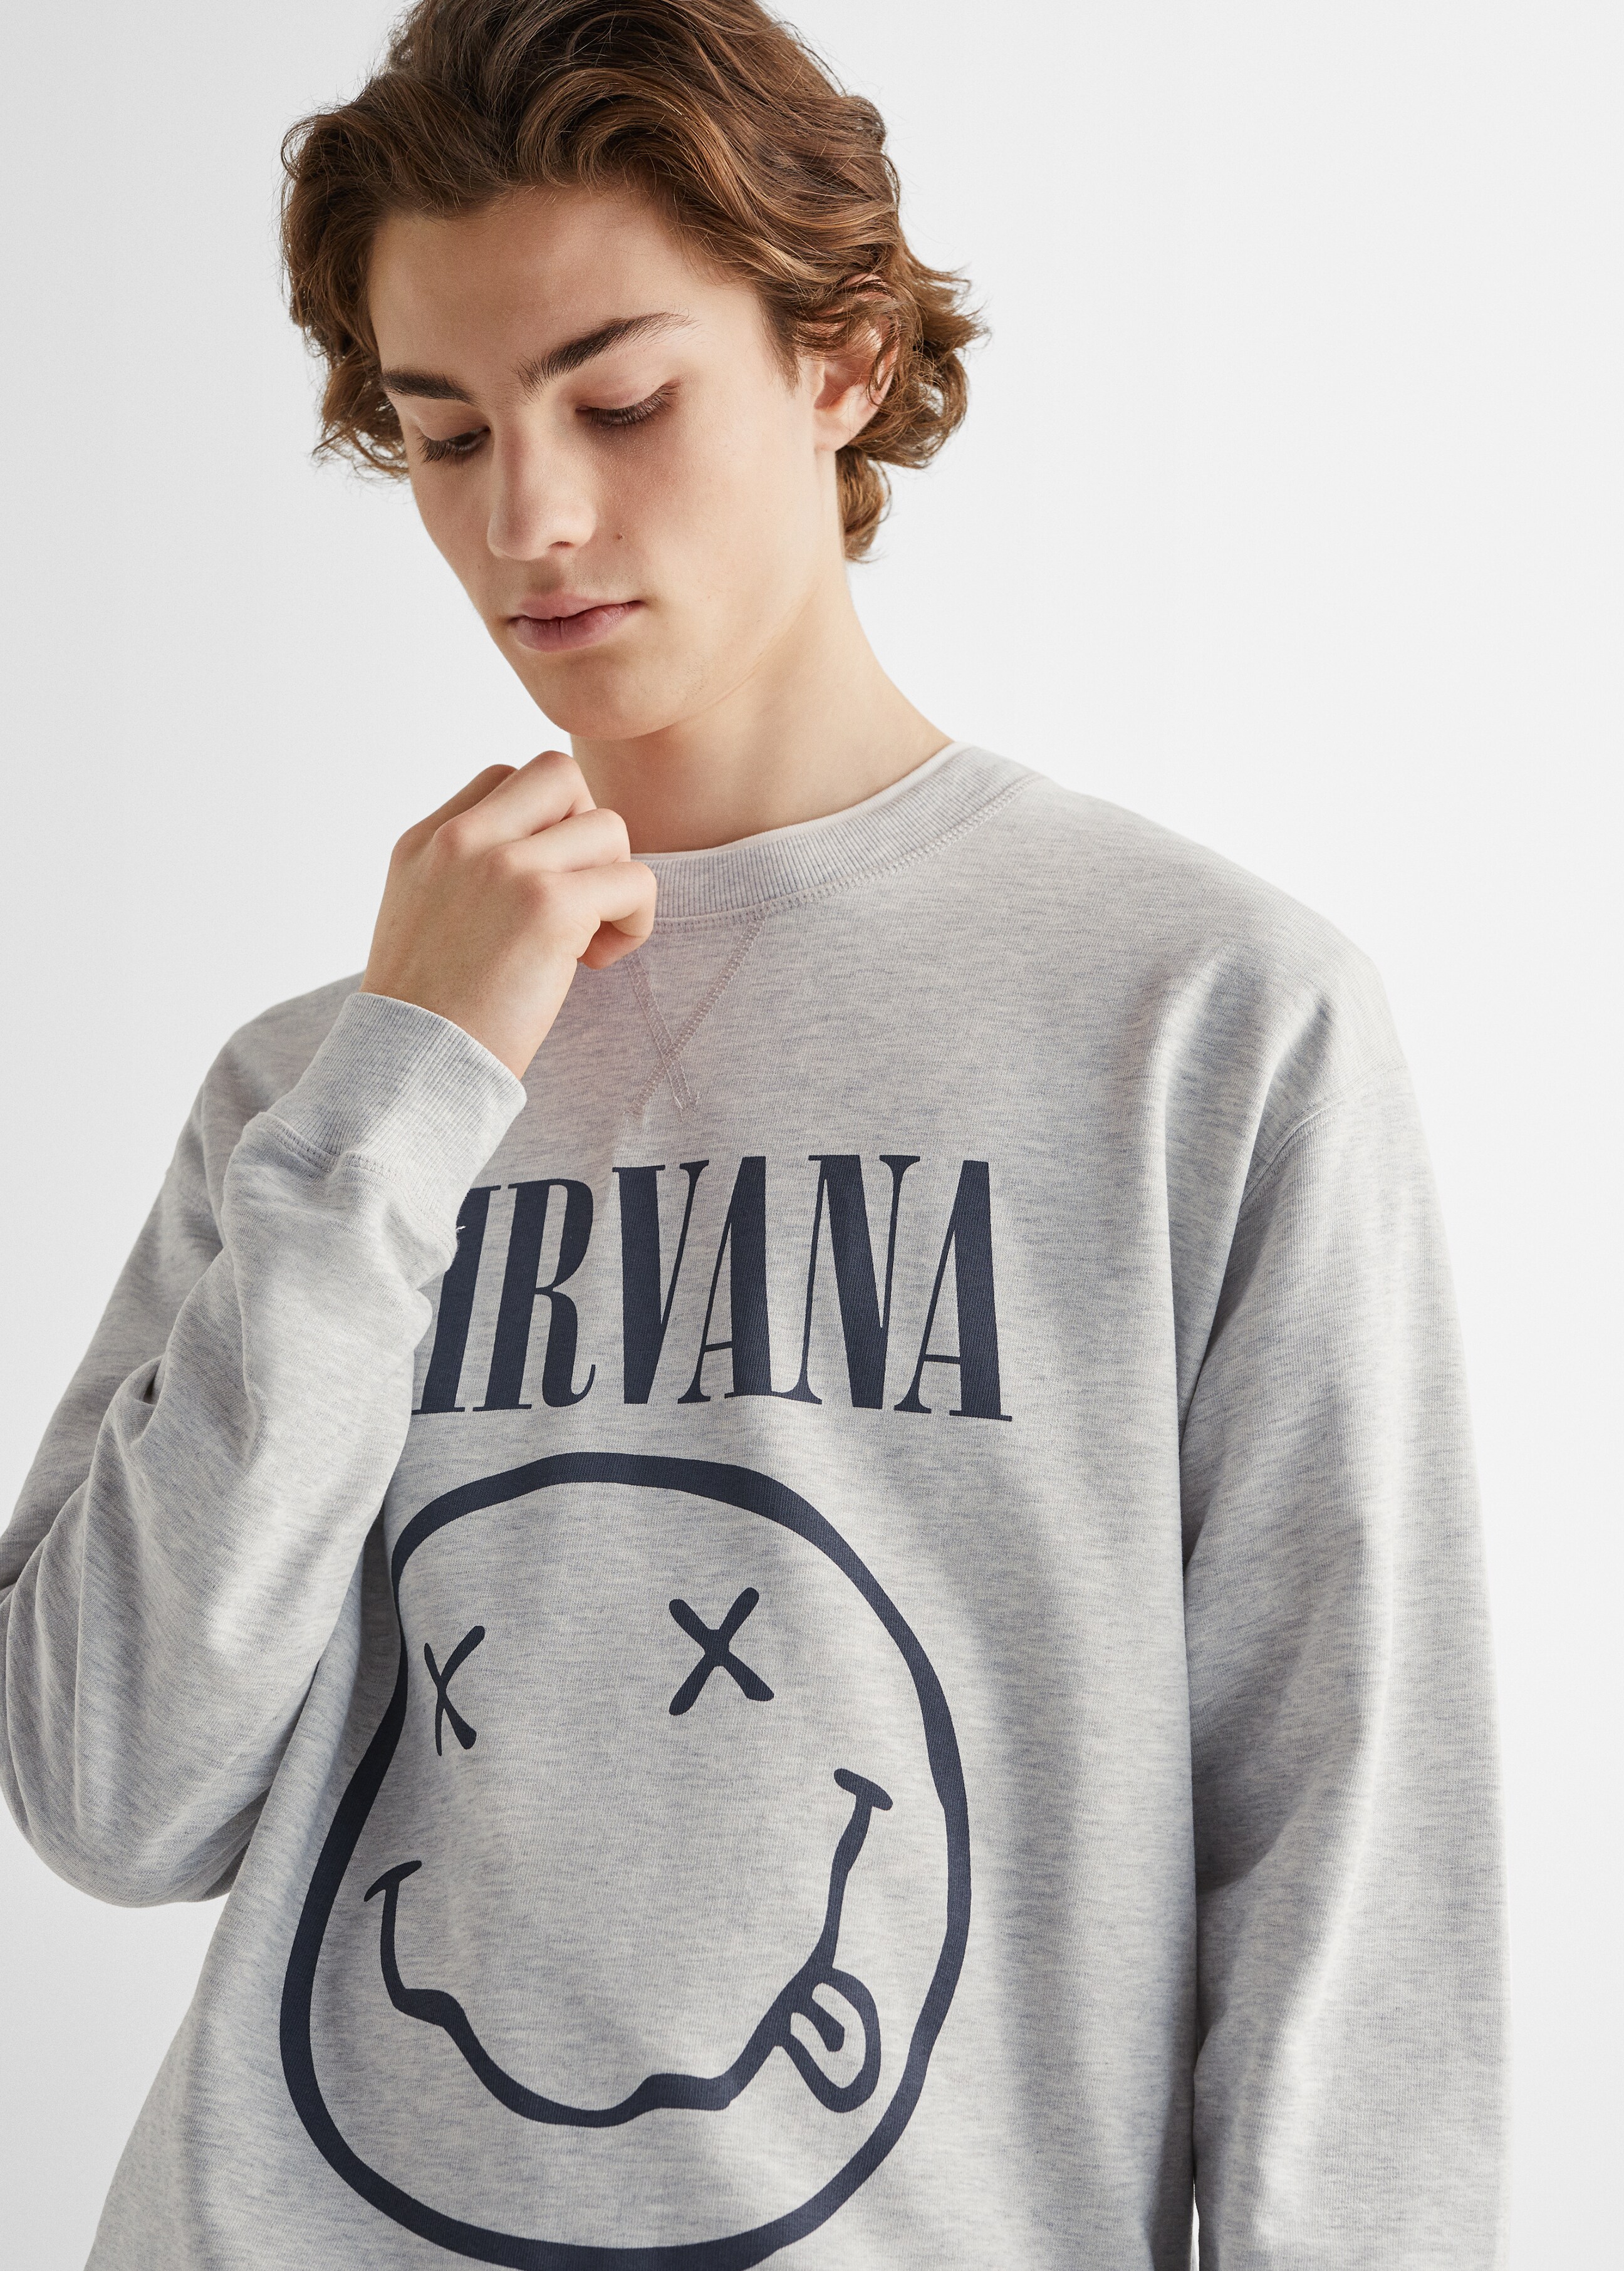 Sweat-shirt Nirvana - Détail de l'article 1